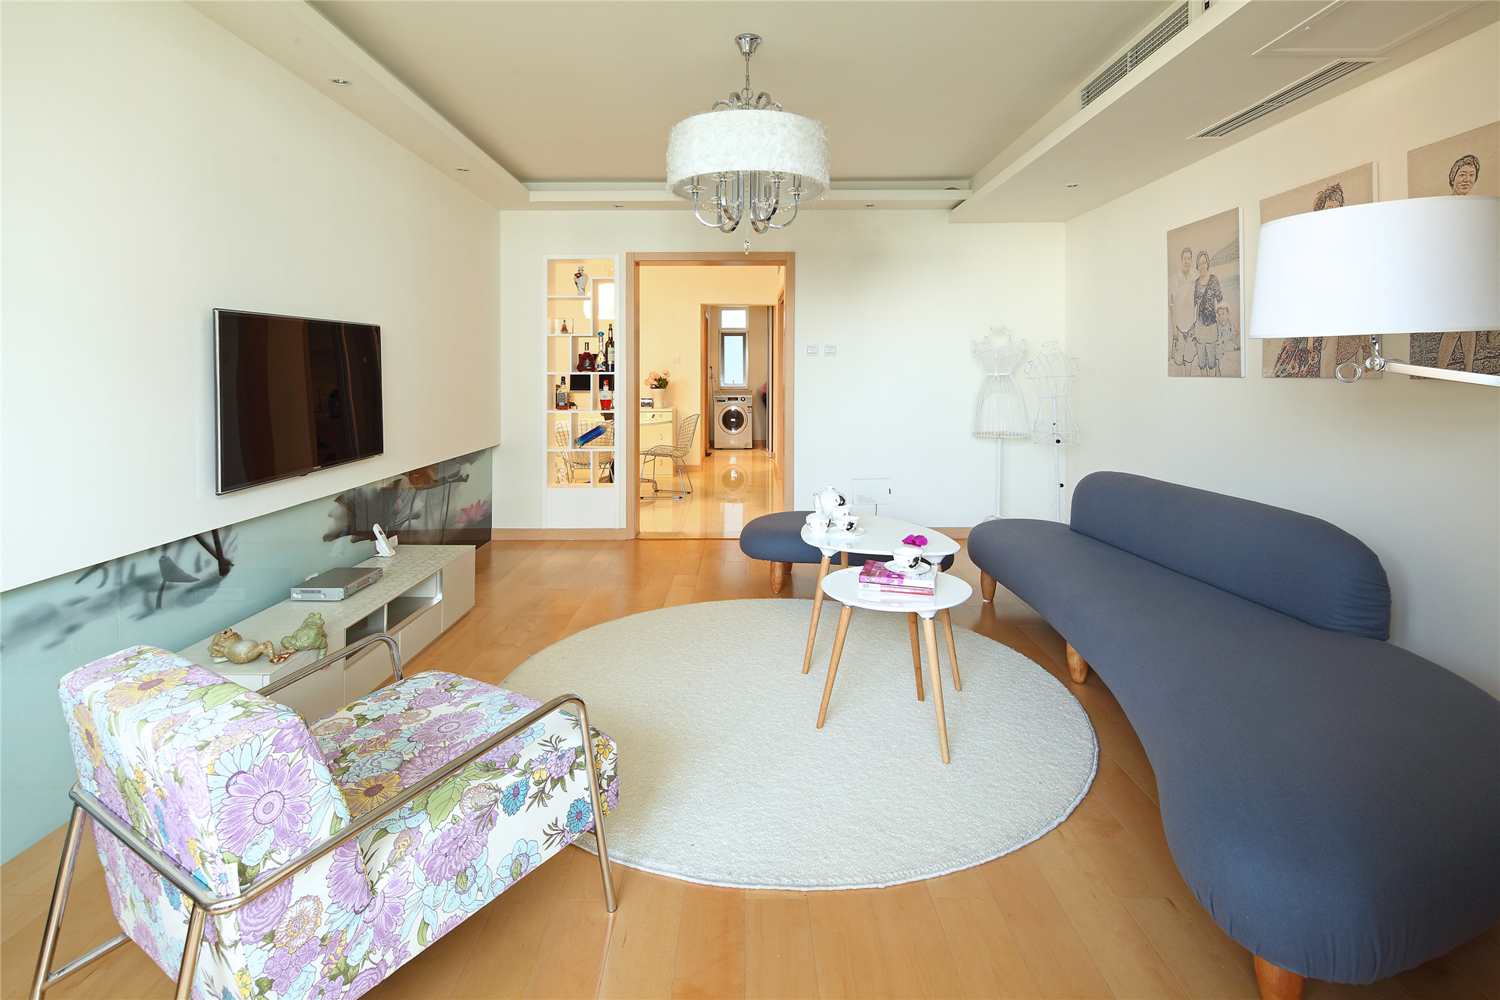 客厅-中色彩多偏重于原木色形成朴素的自然风格。